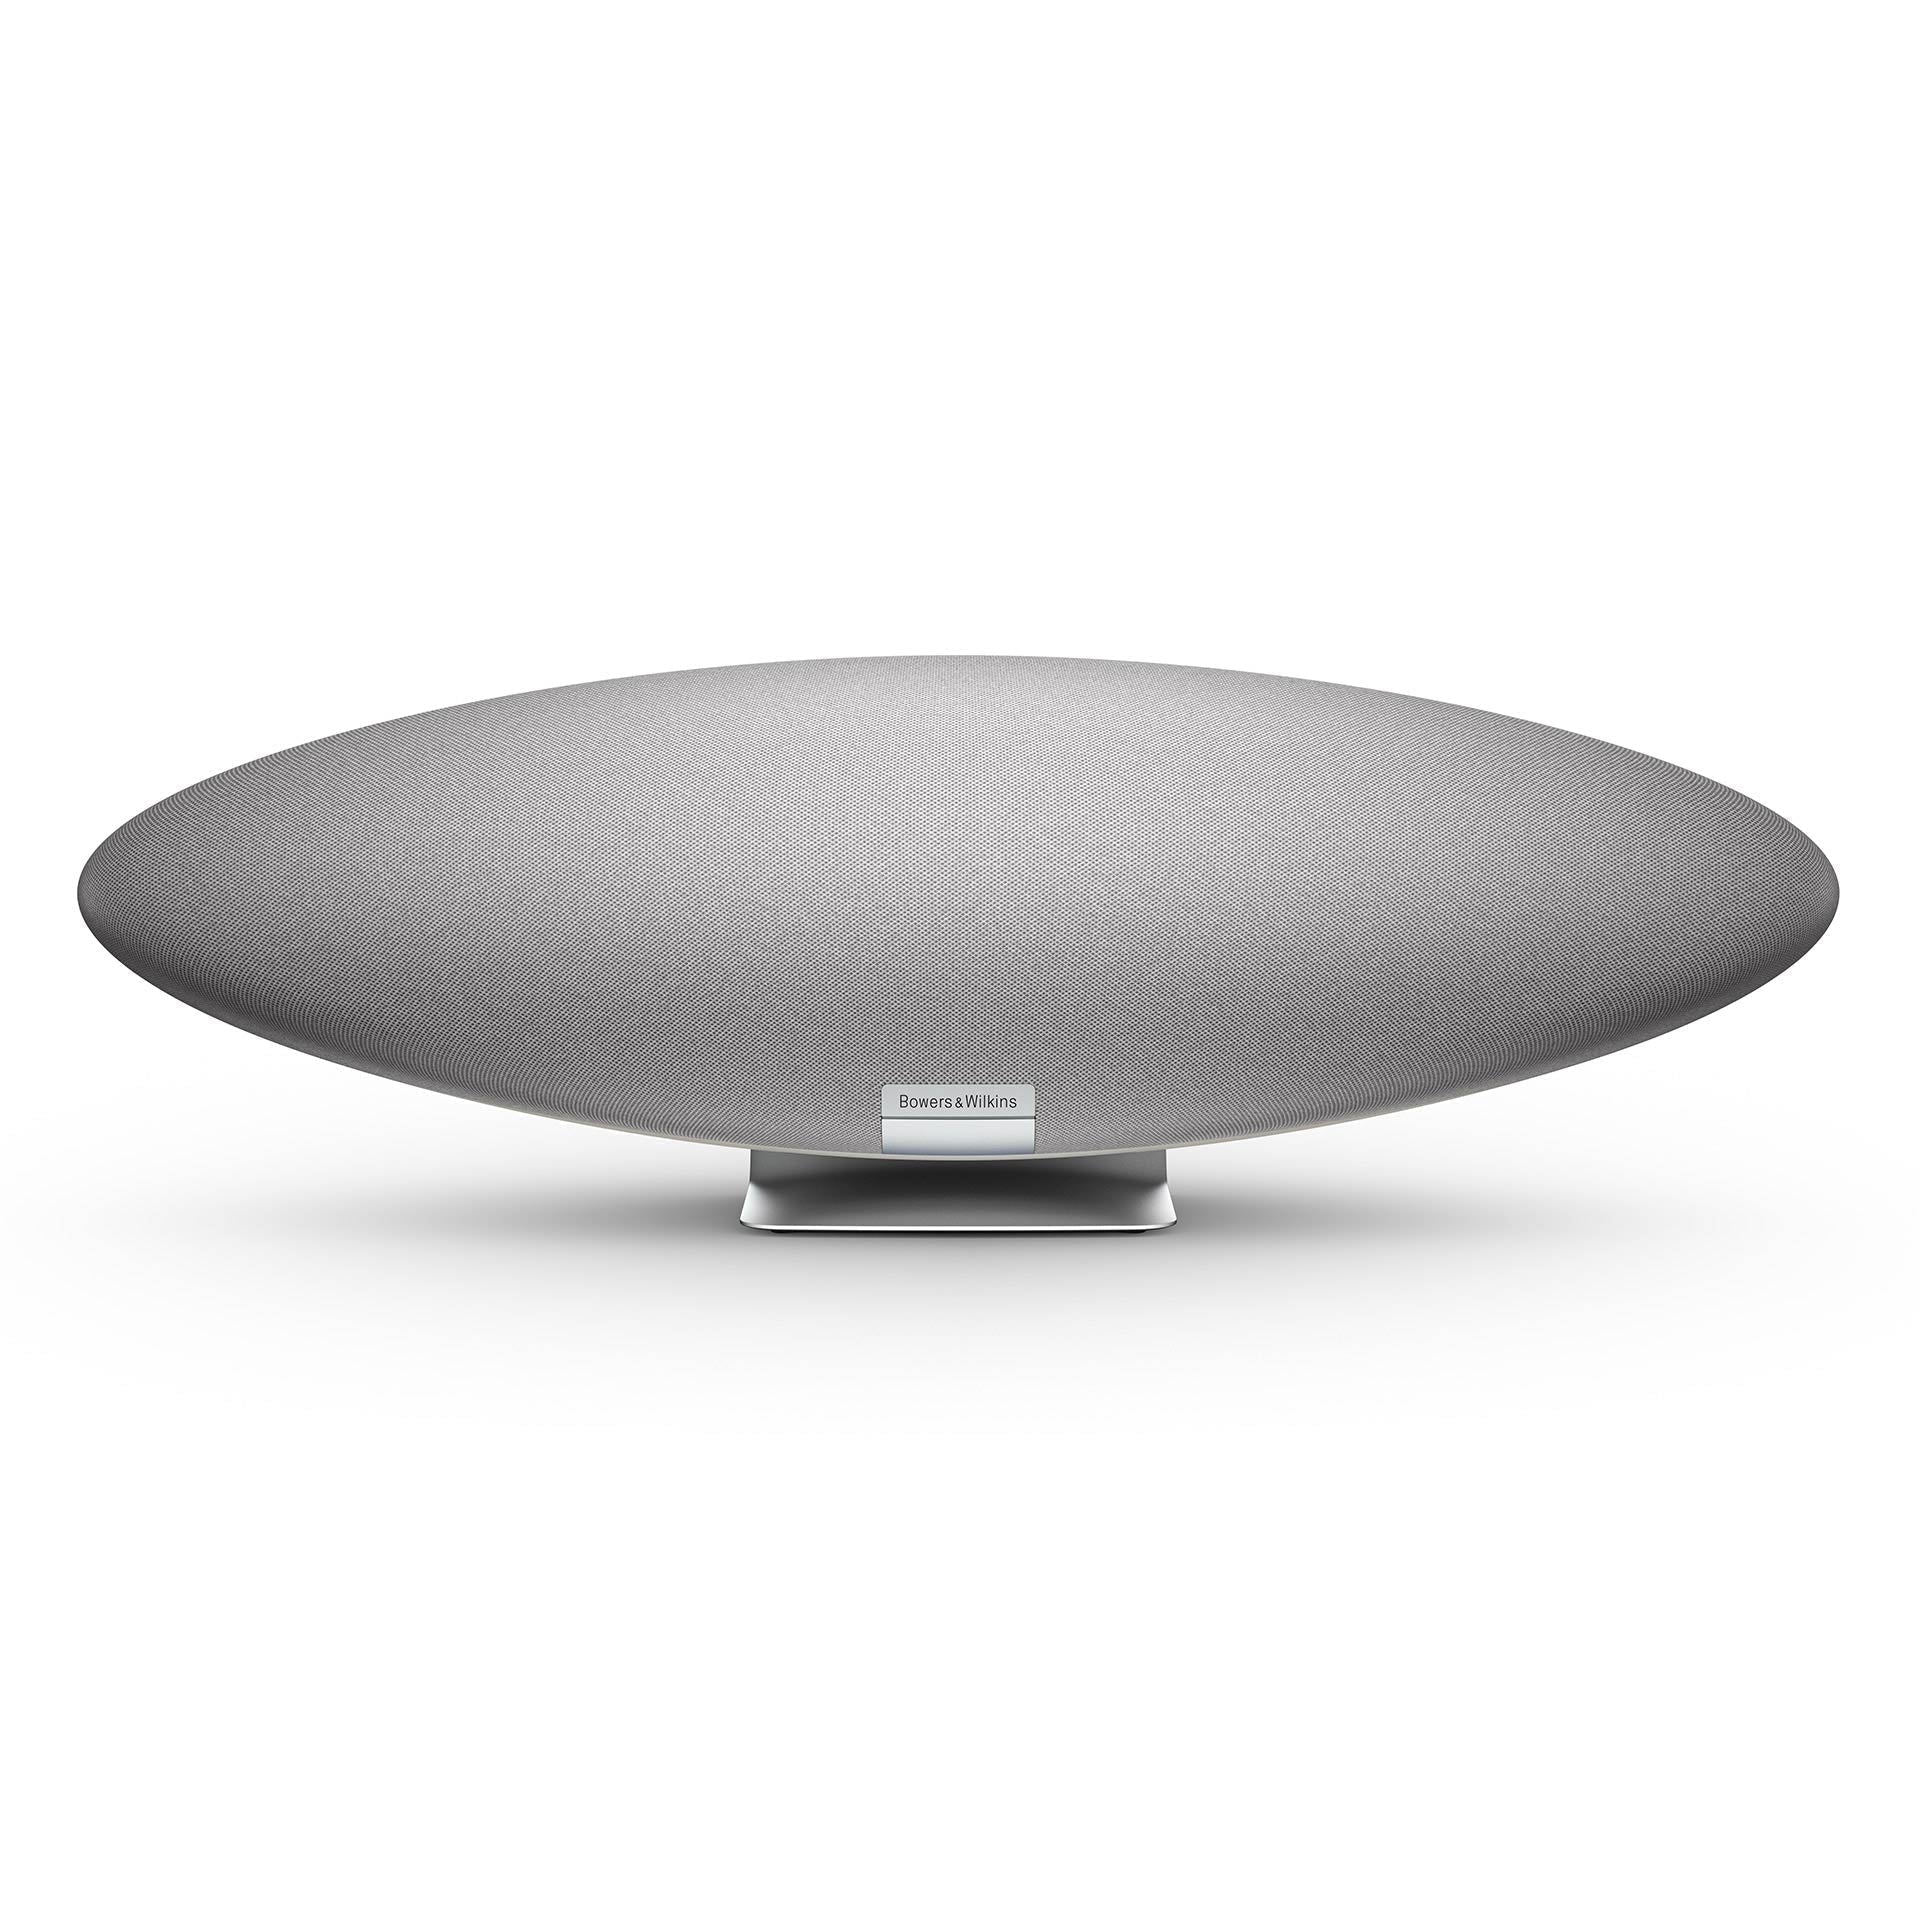 Bowers & Wilkins - Zeppelin - Wireless Smart Speaker Australia